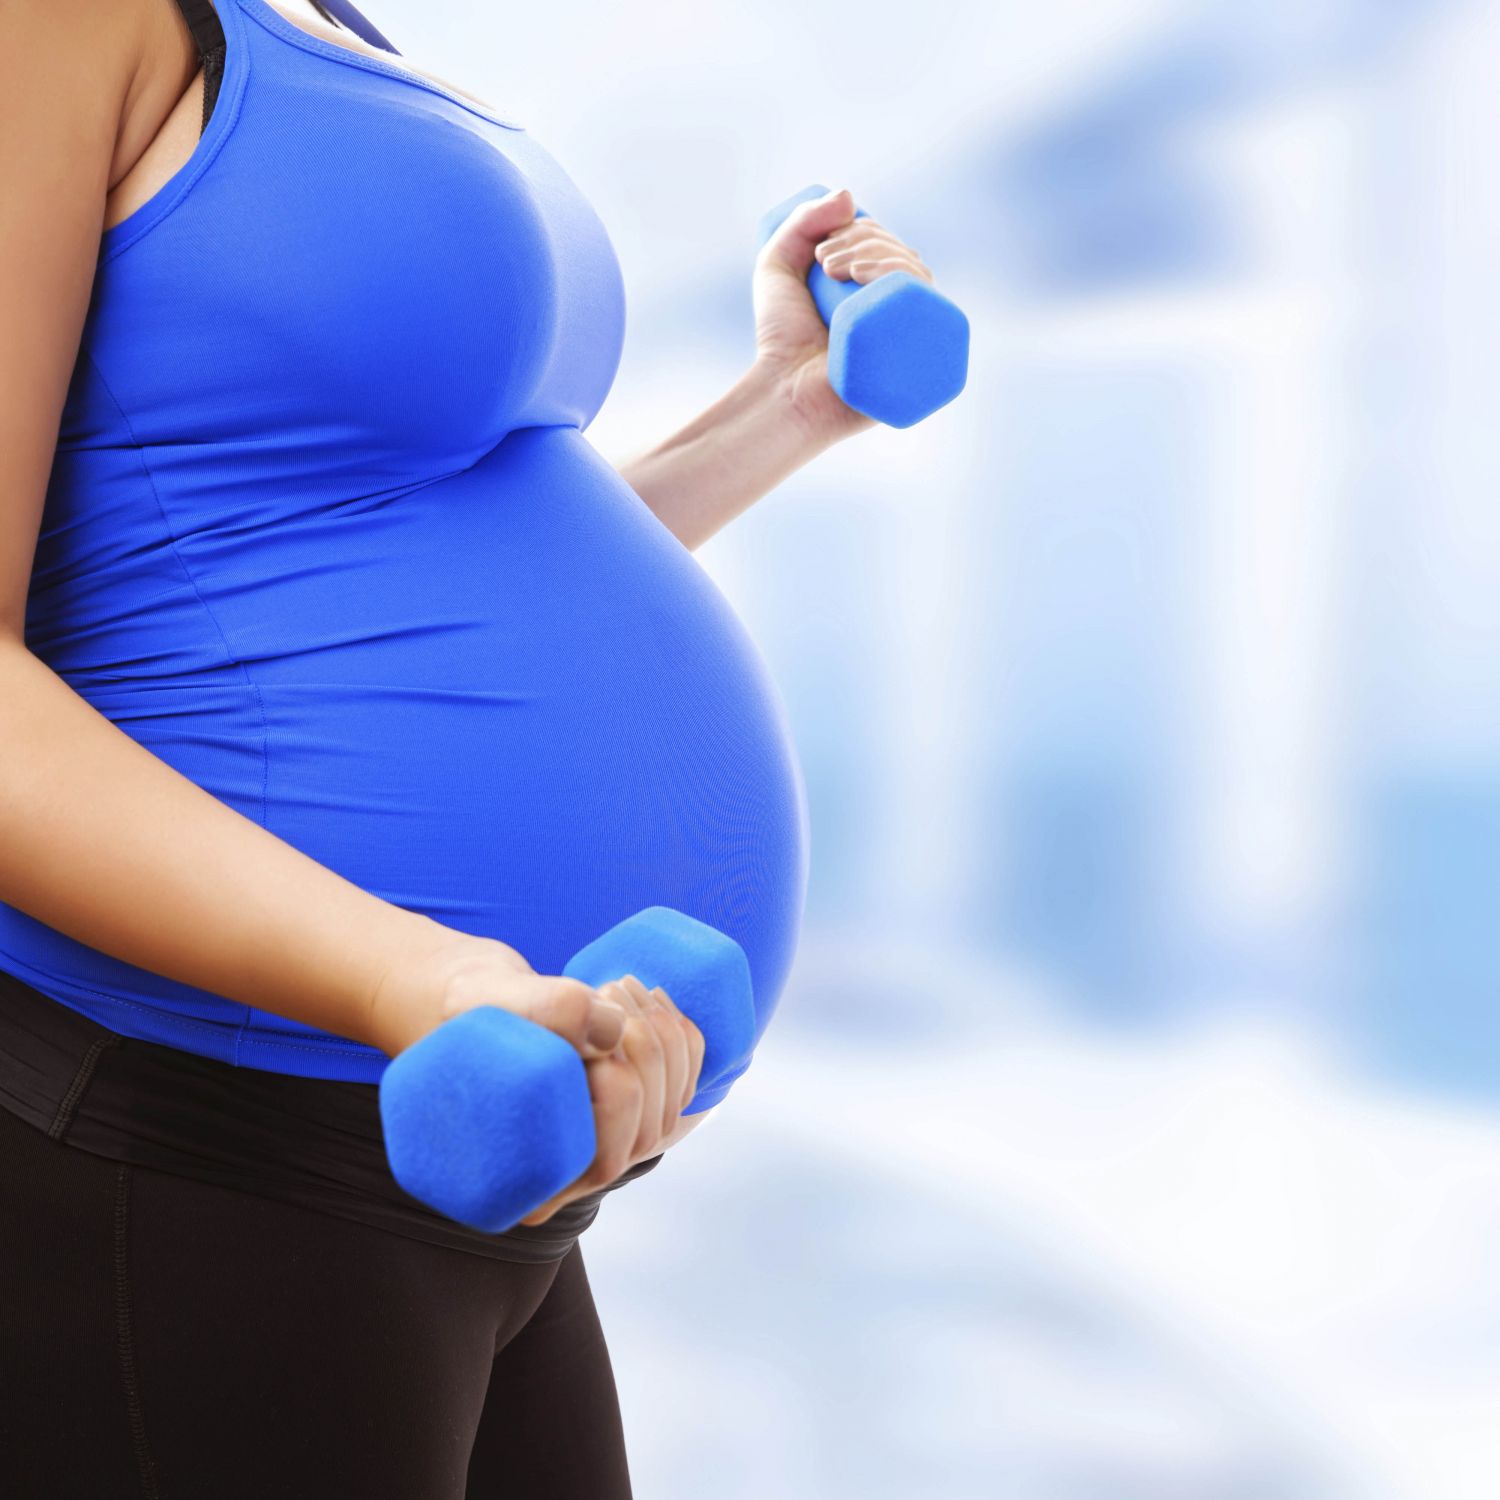 Schwangere mit Hanteln in der Hand. Thema: Schwangerschaftskurse 